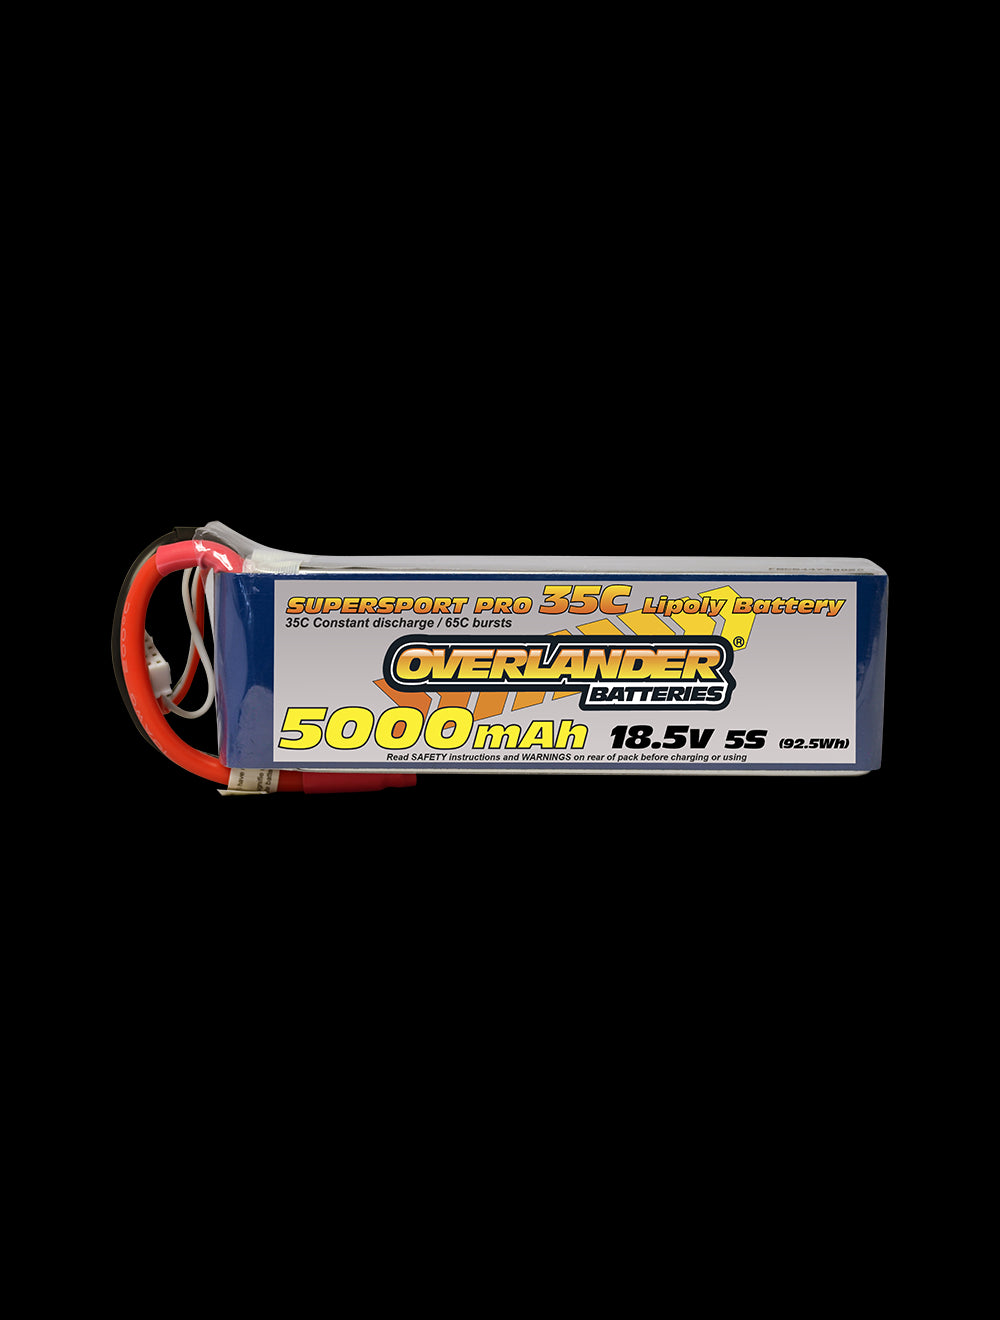 Overlander 5000mAh 18.5V 5S 35C Supersport Pro LiPo Battery - XT60 Connector 2579